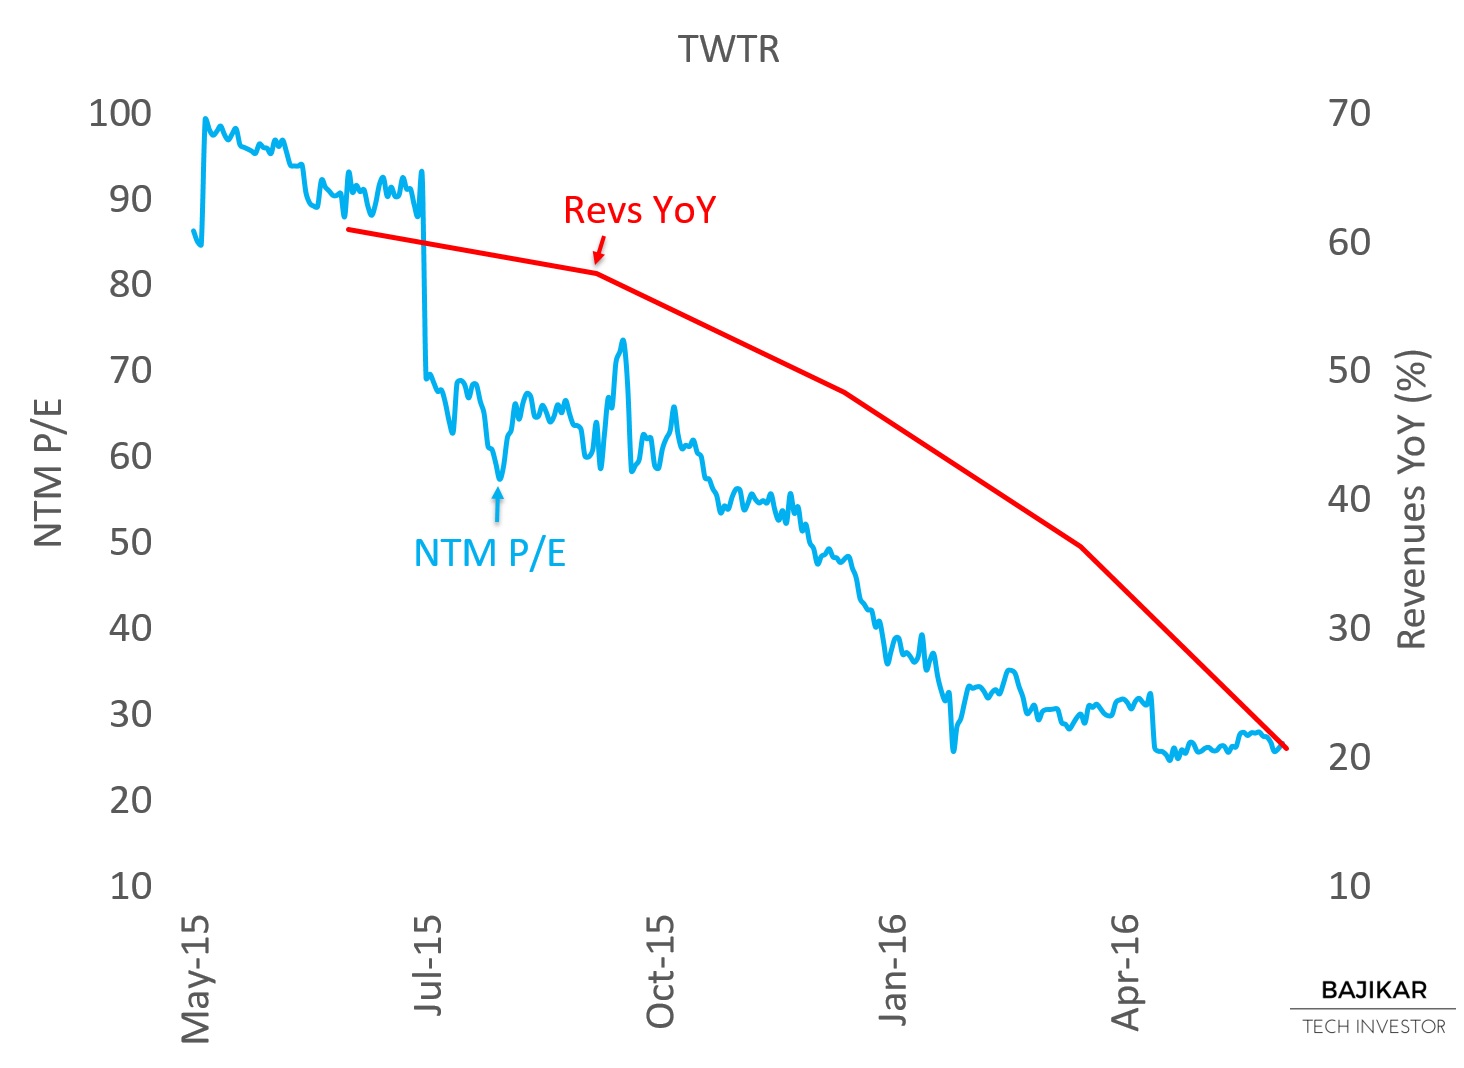 TWTR P/E vs. YoY Revenues